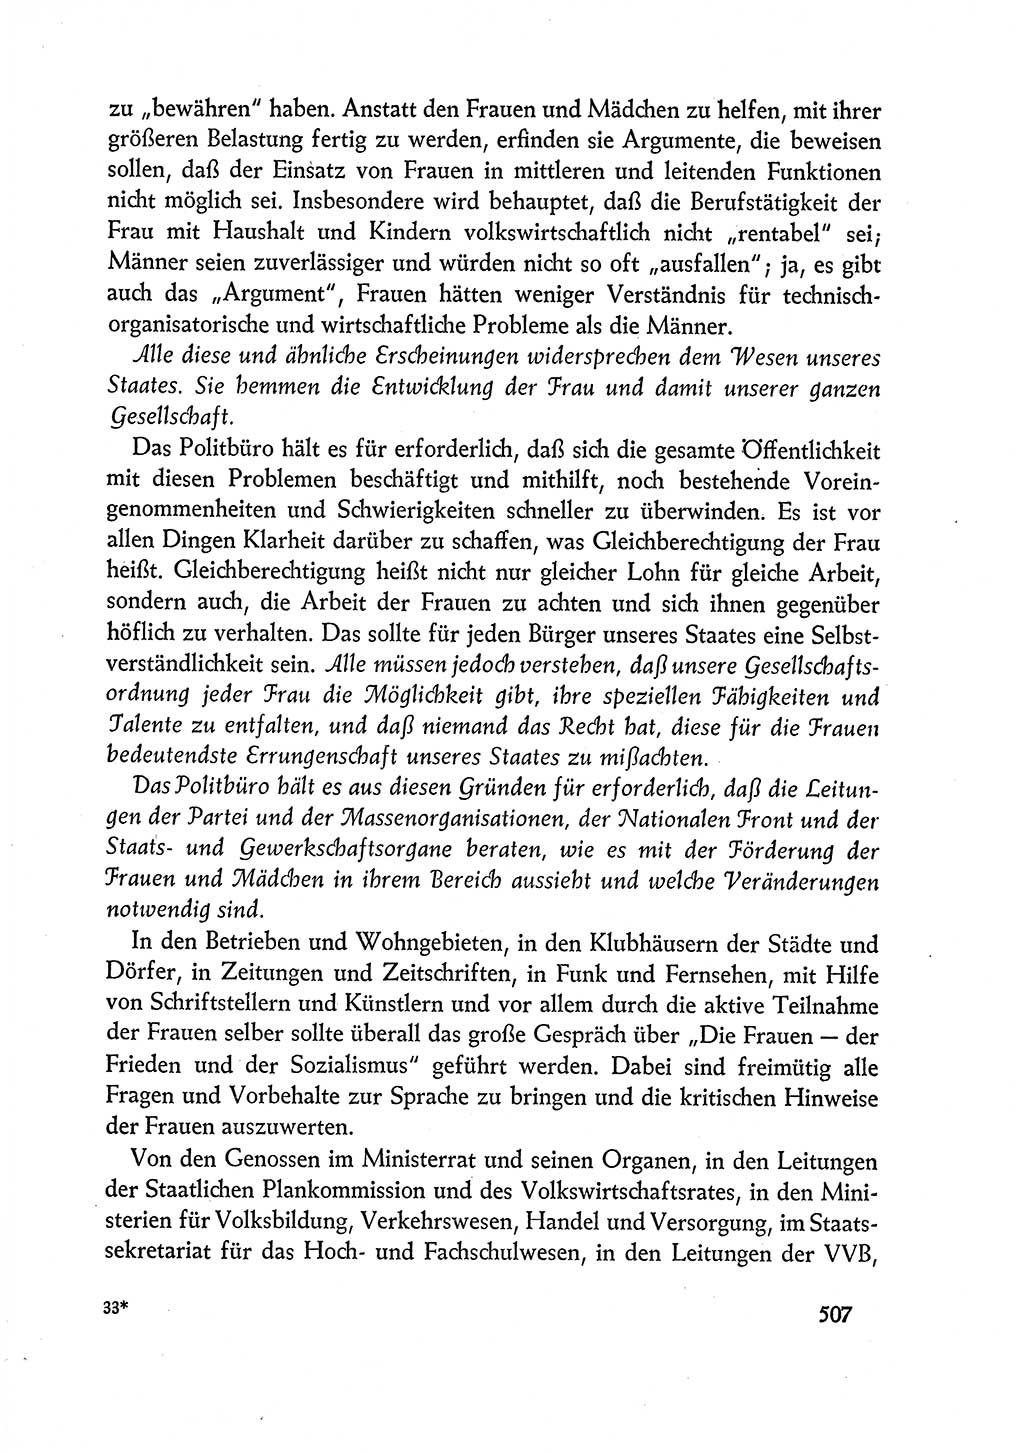 Dokumente der Sozialistischen Einheitspartei Deutschlands (SED) [Deutsche Demokratische Republik (DDR)] 1960-1961, Seite 507 (Dok. SED DDR 1960-1961, S. 507)